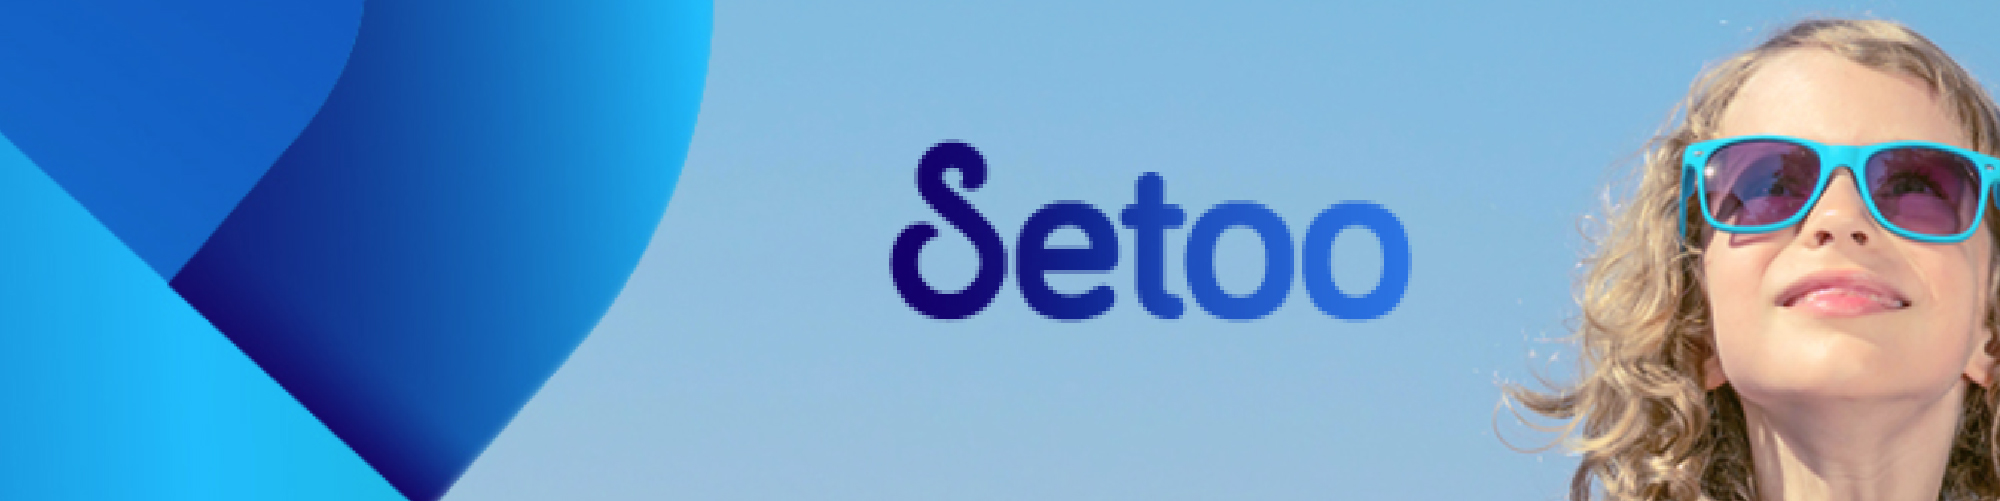 setoo blog header